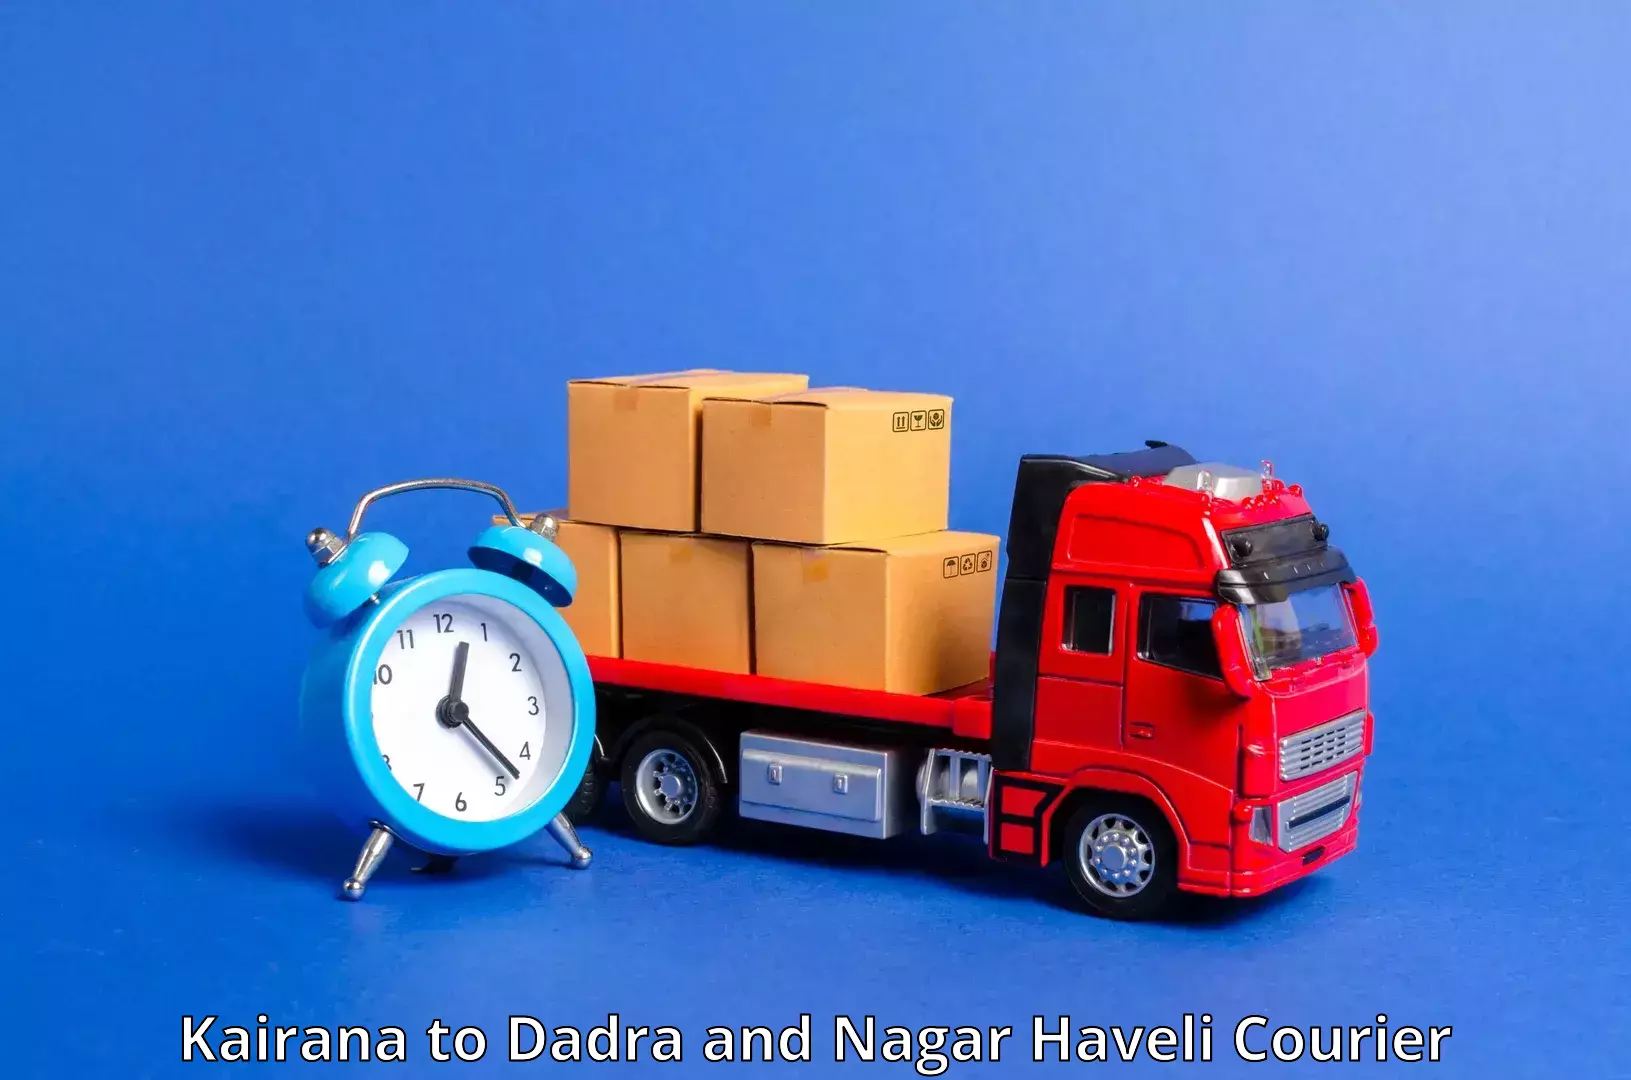 Delivery service partnership Kairana to Dadra and Nagar Haveli